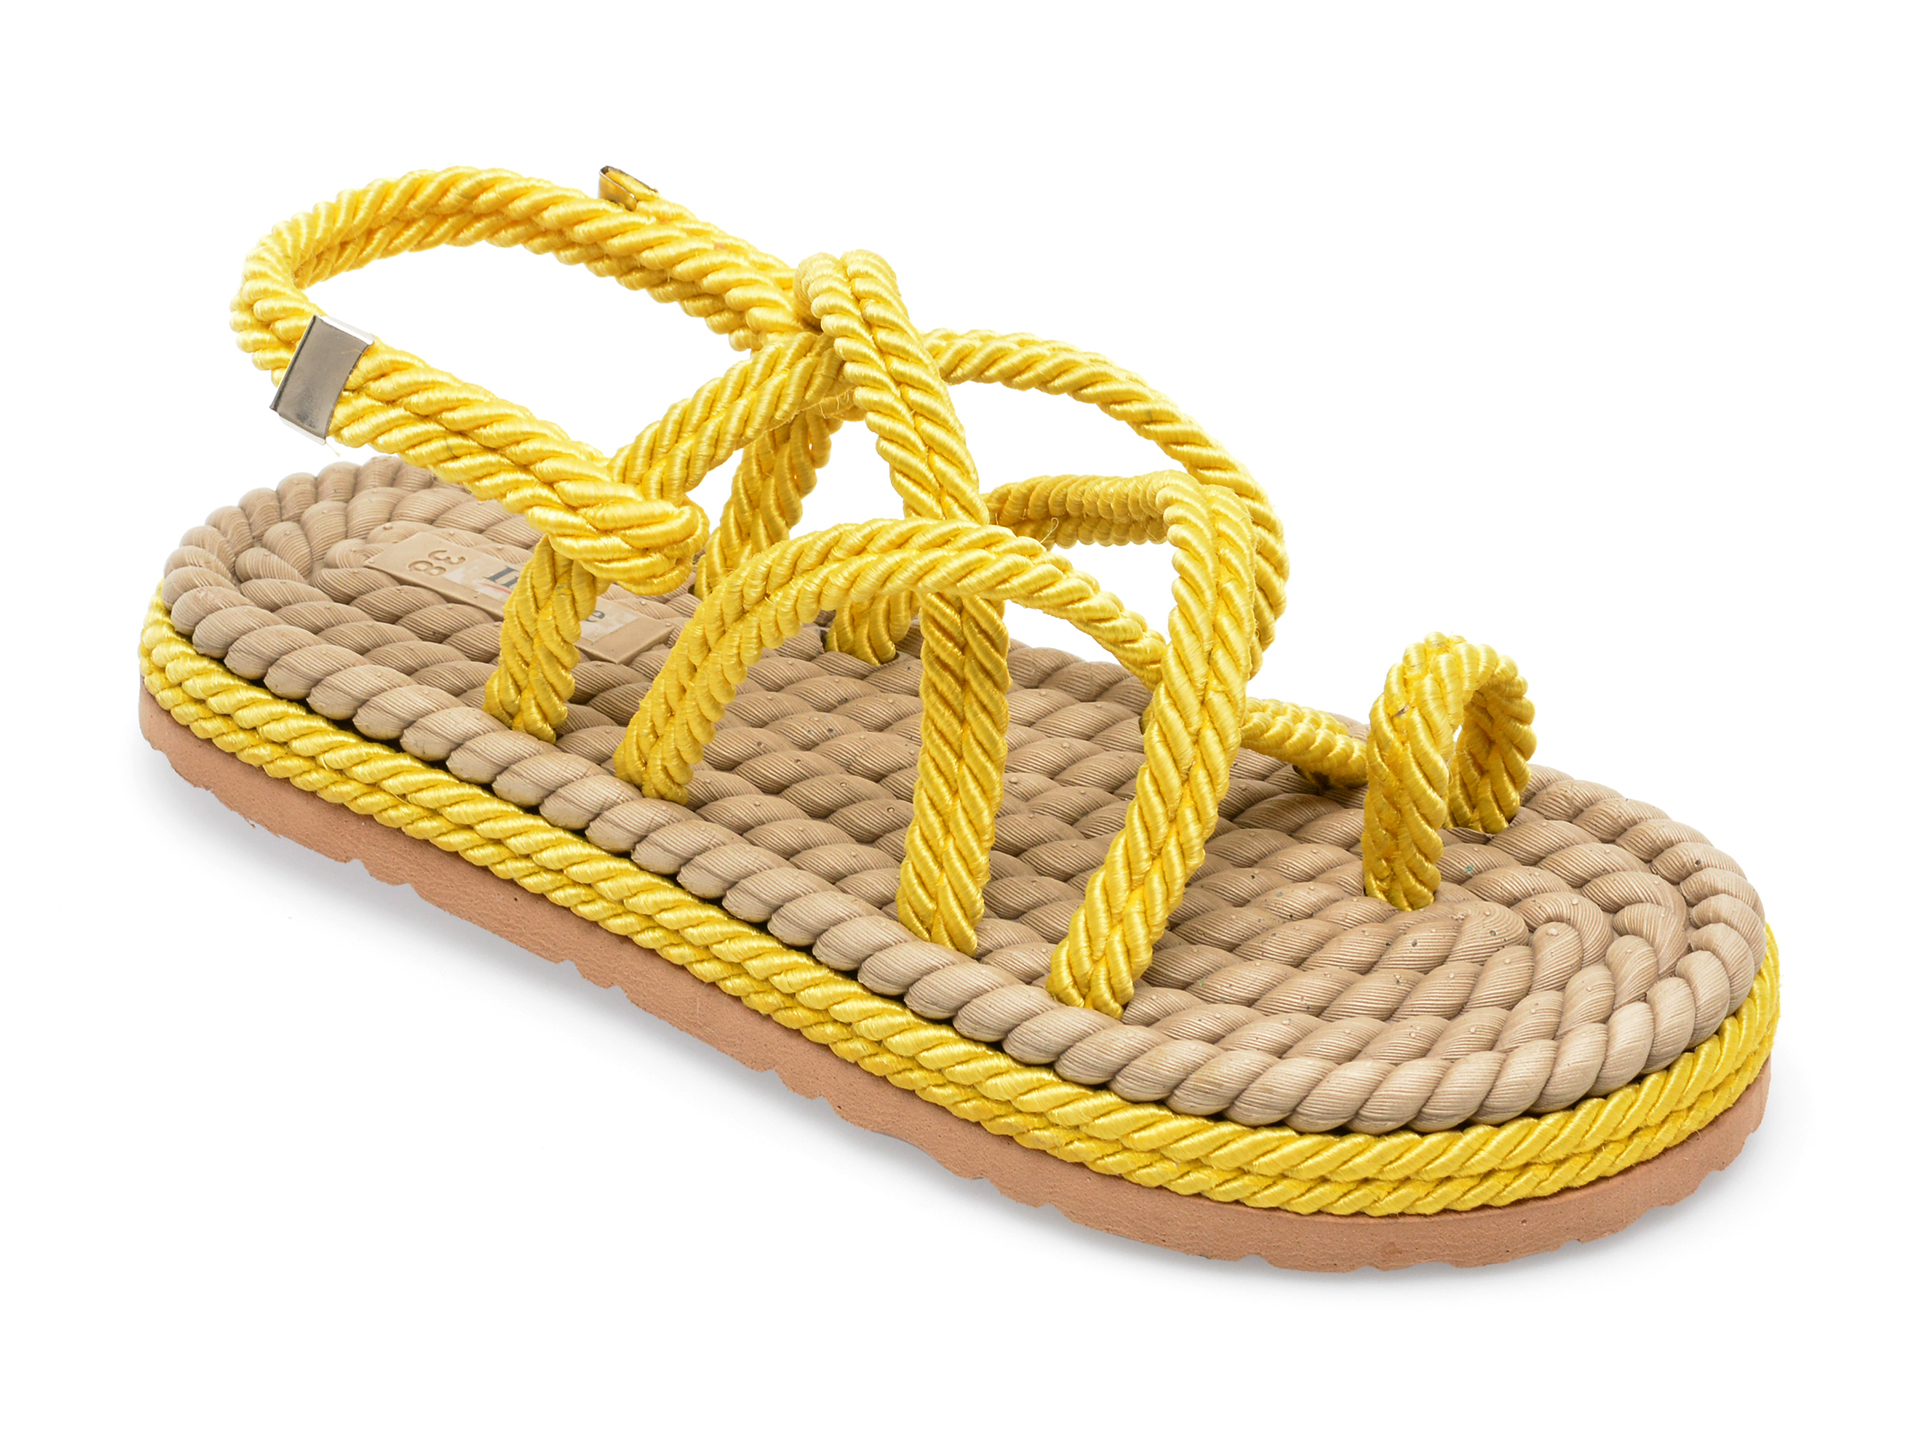 Sandale IMAGE galbene, 2022, din material textil Image imagine noua 2022